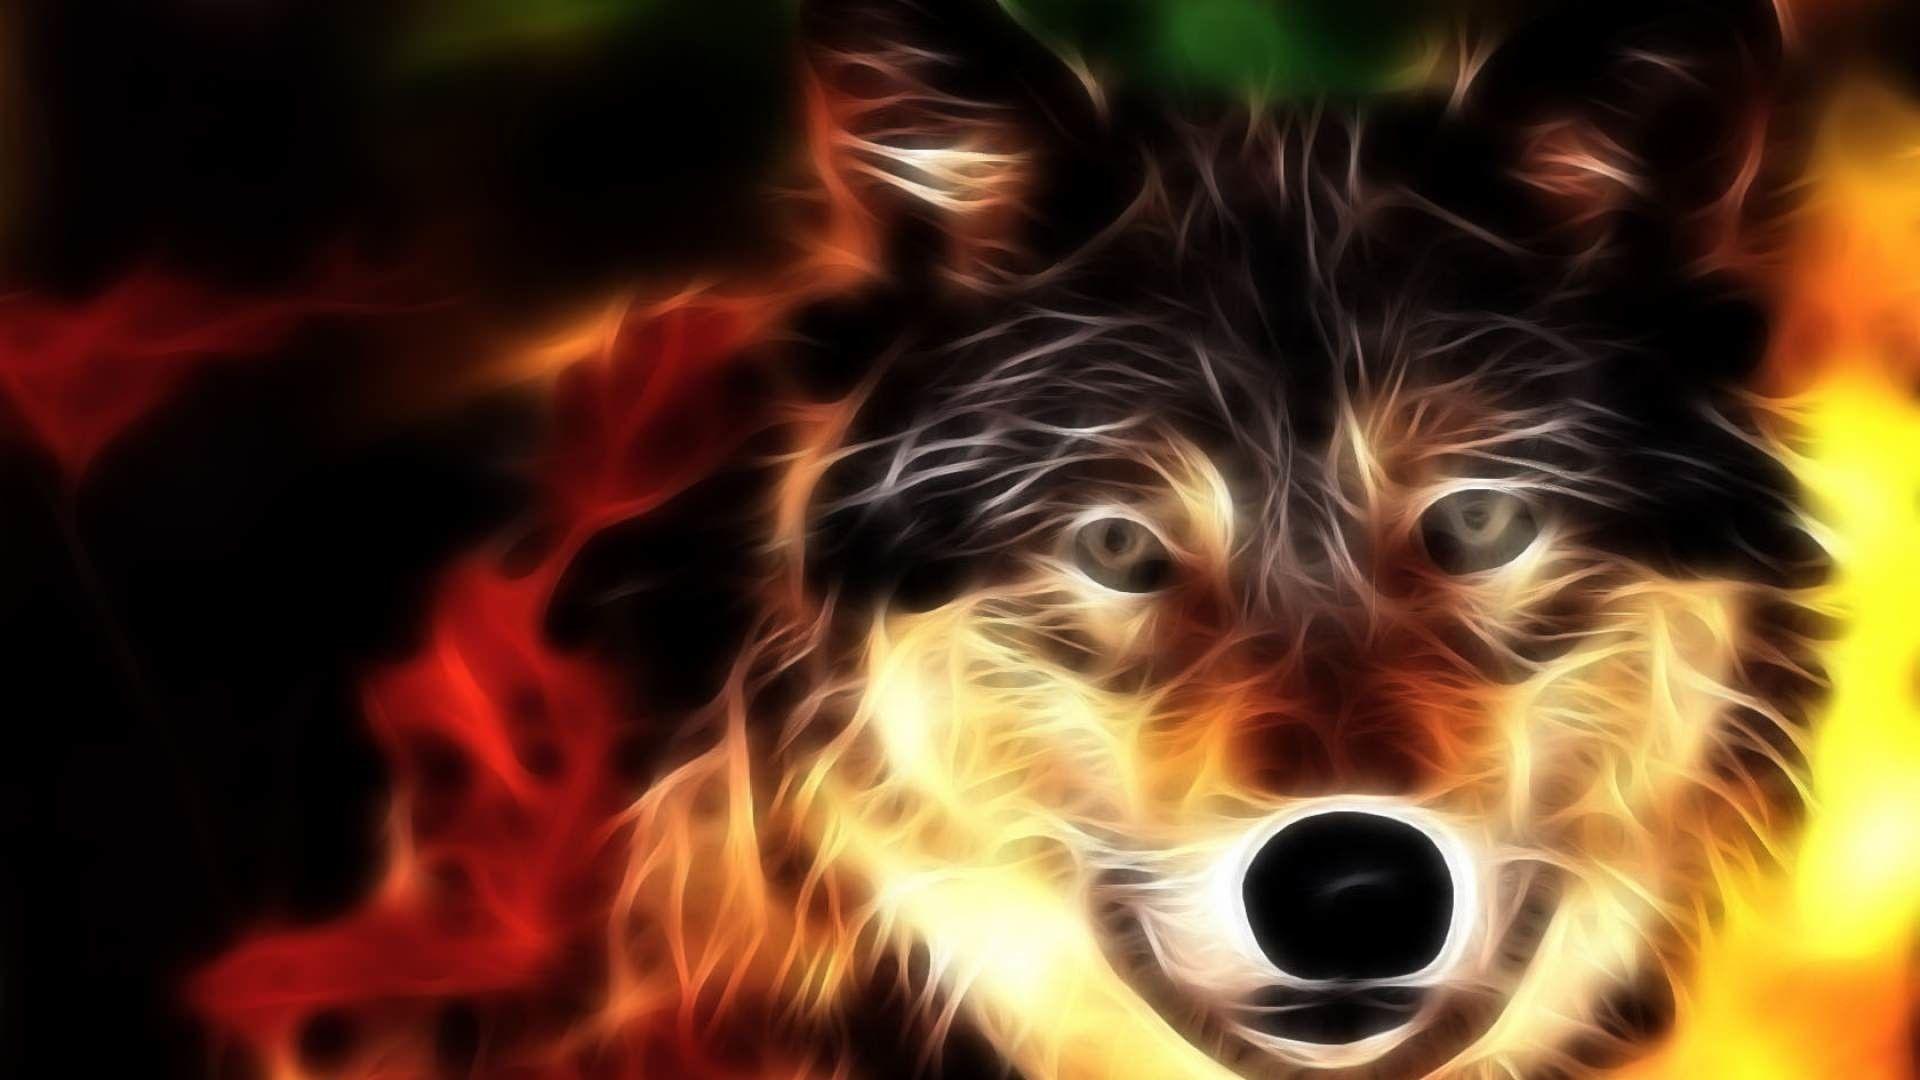 Fire Wolf Wallpaper